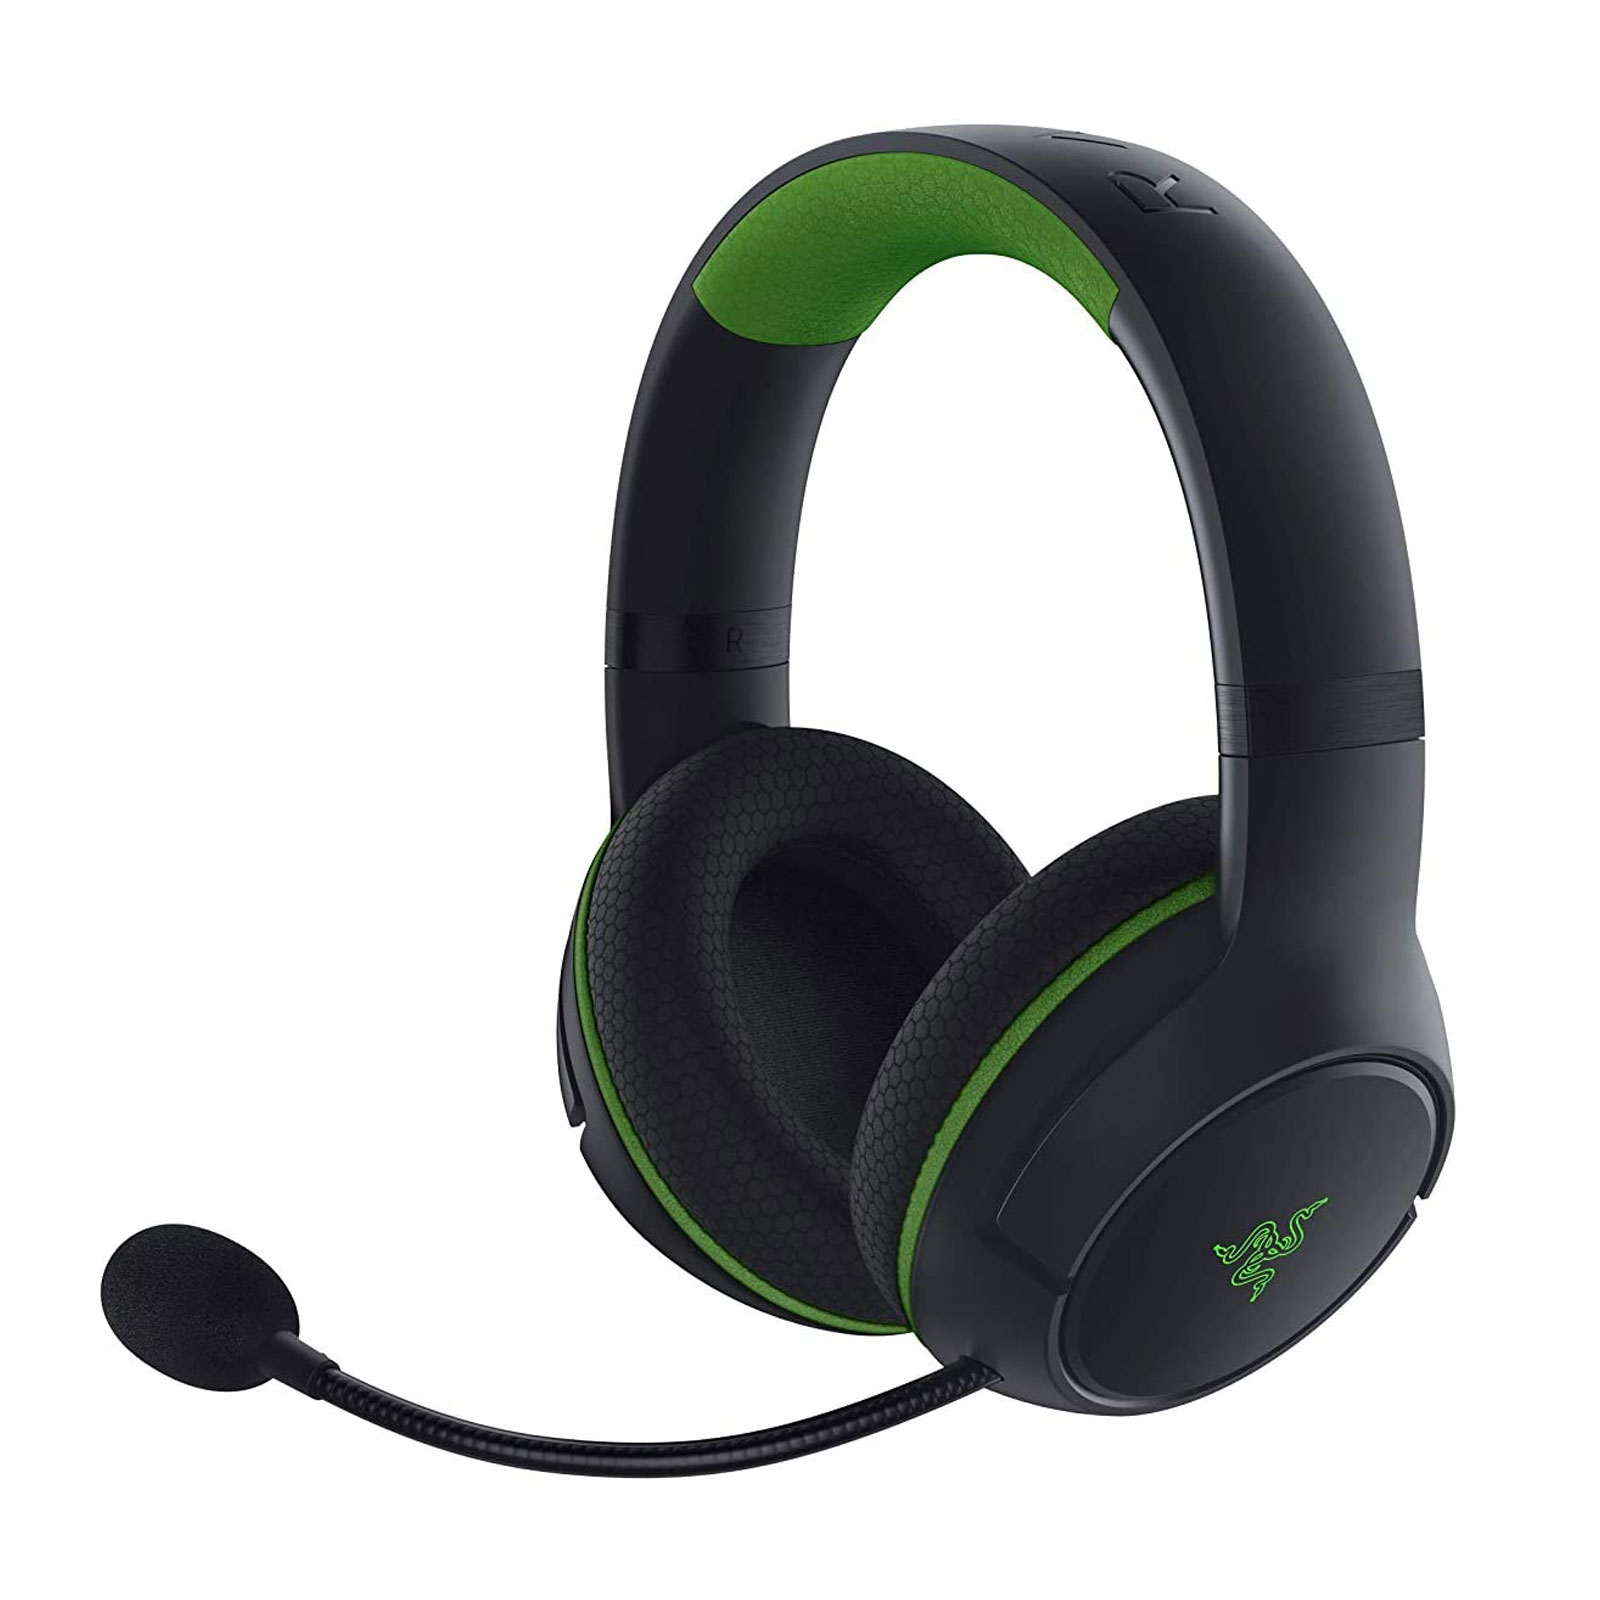 Razer Kaira For Xbox Gaming-Headset